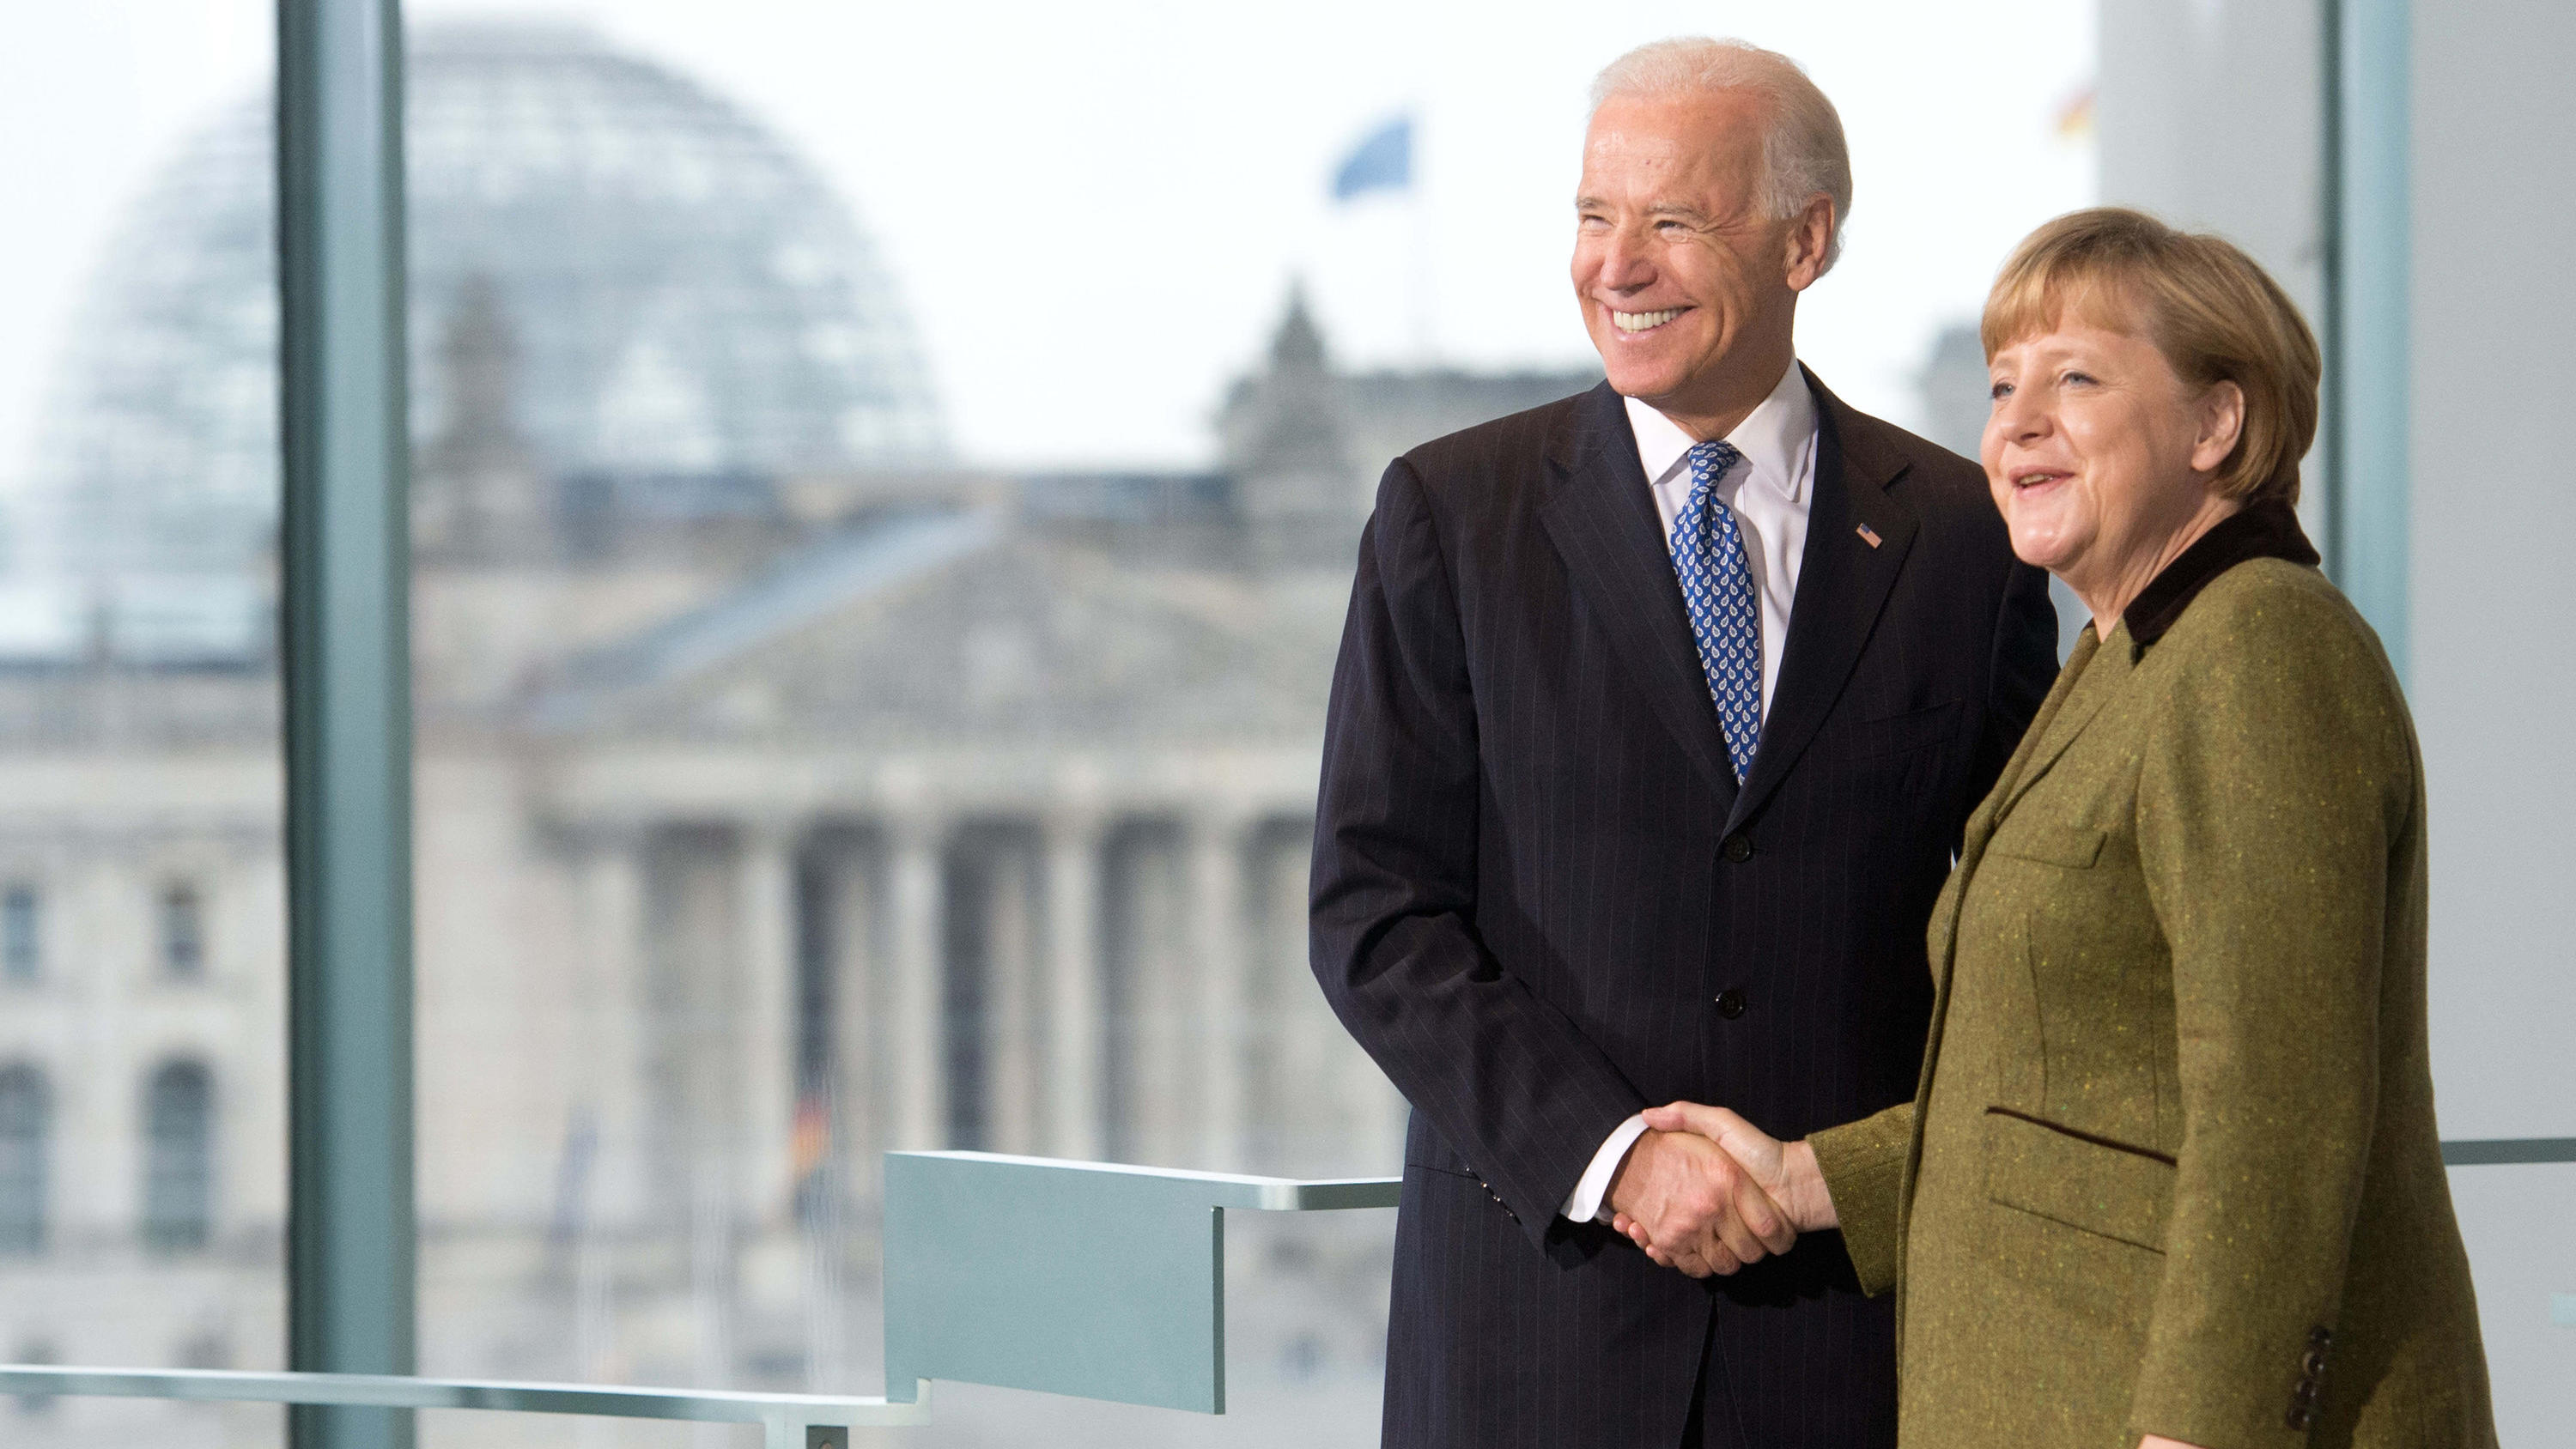 ARCHIV - 01.02.2013, Berlin: Bundeskanzlerin Angela Merkel (CDU) empfängt im Kanzleramt den damaligen US-Vizepräsidenten Joe Biden. (zu dpa "100 Tage Vollgas - Biden hat zum Start viel vor") Foto: picture alliance / dpa +++ dpa-Bildfunk +++